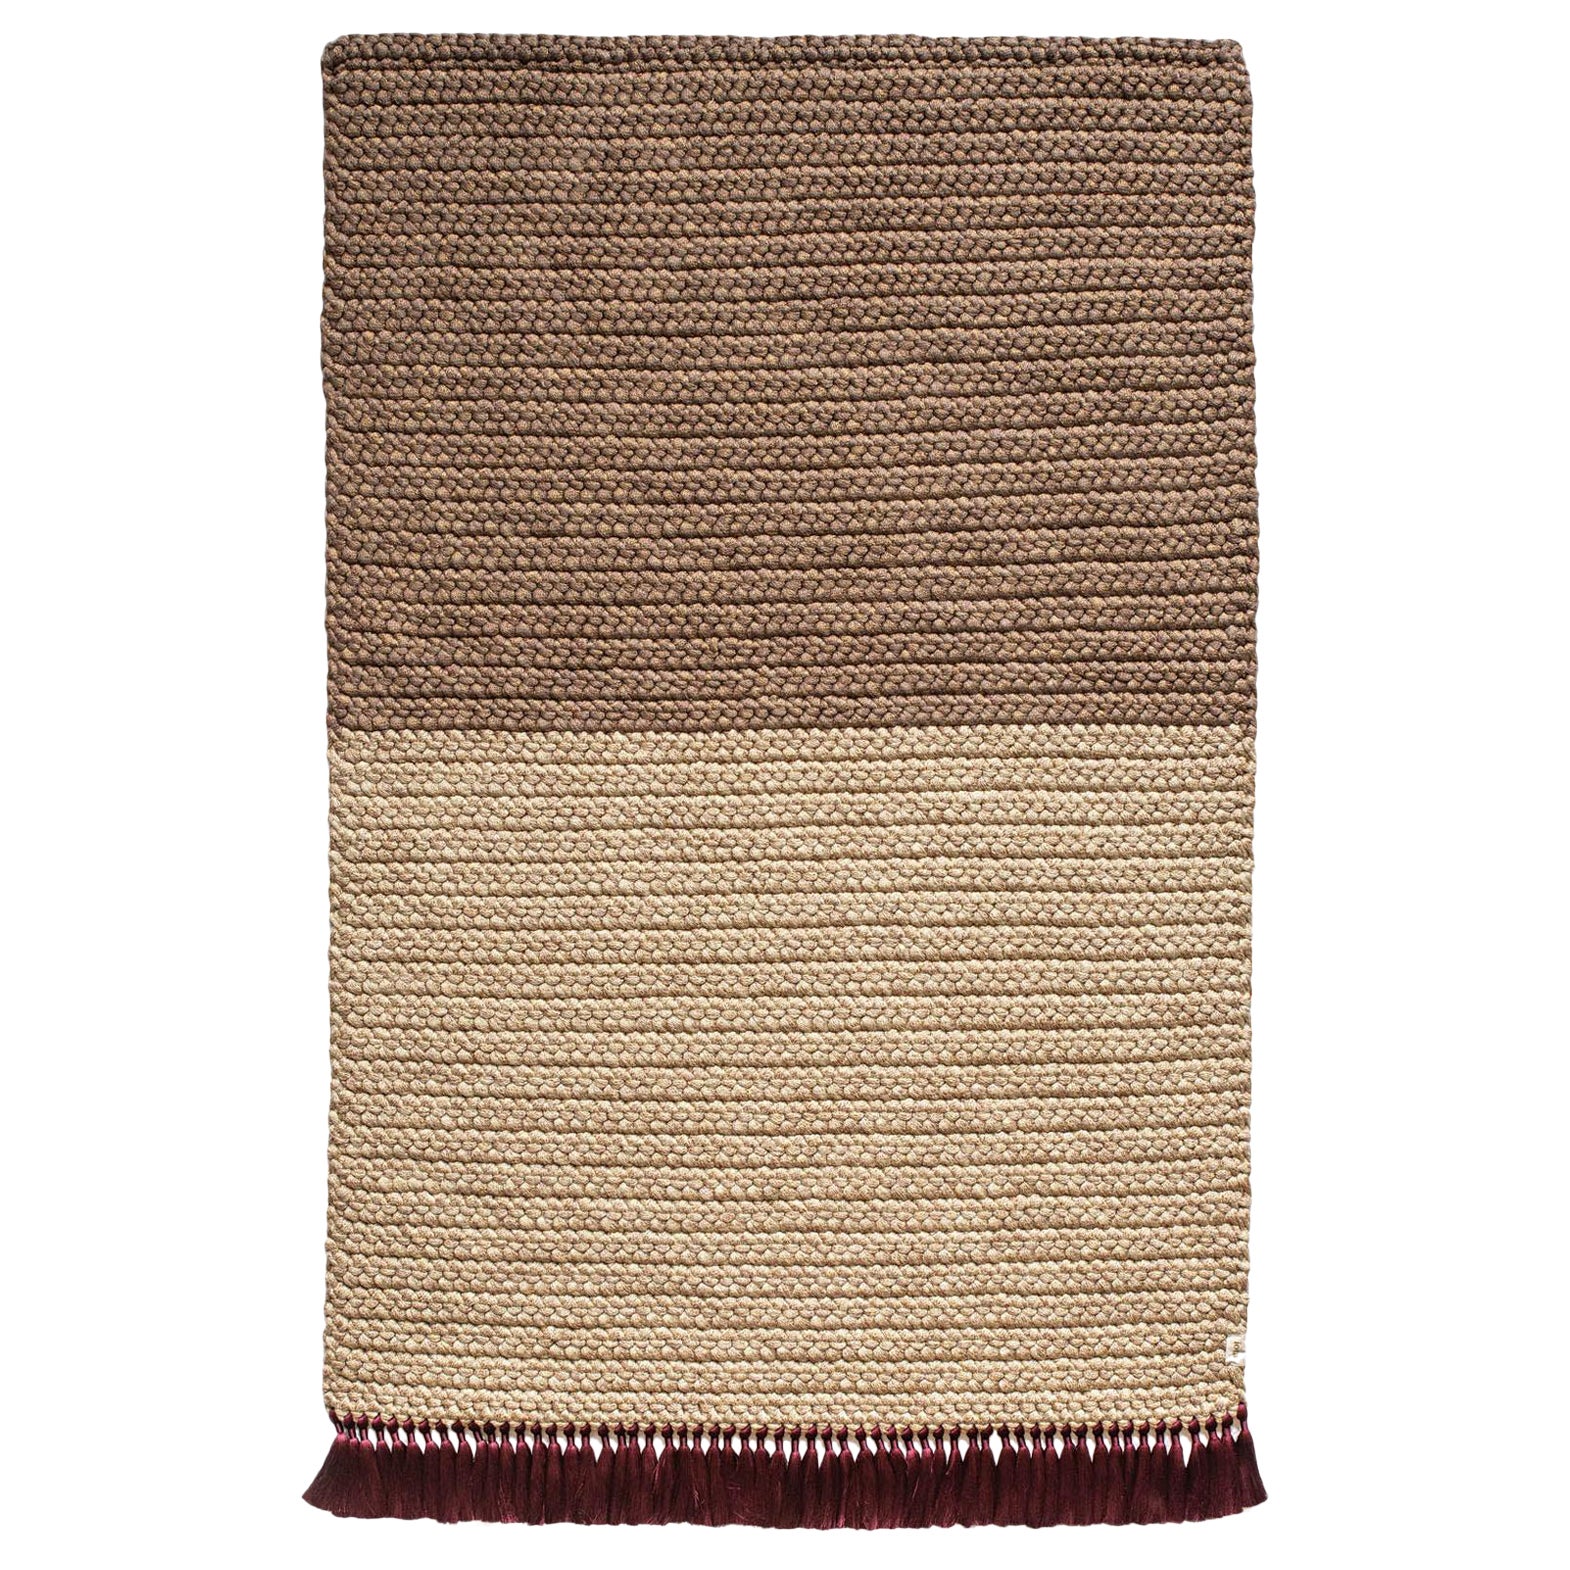 Handmade Crochet Two-Tone Rug in Beige Brown by iota